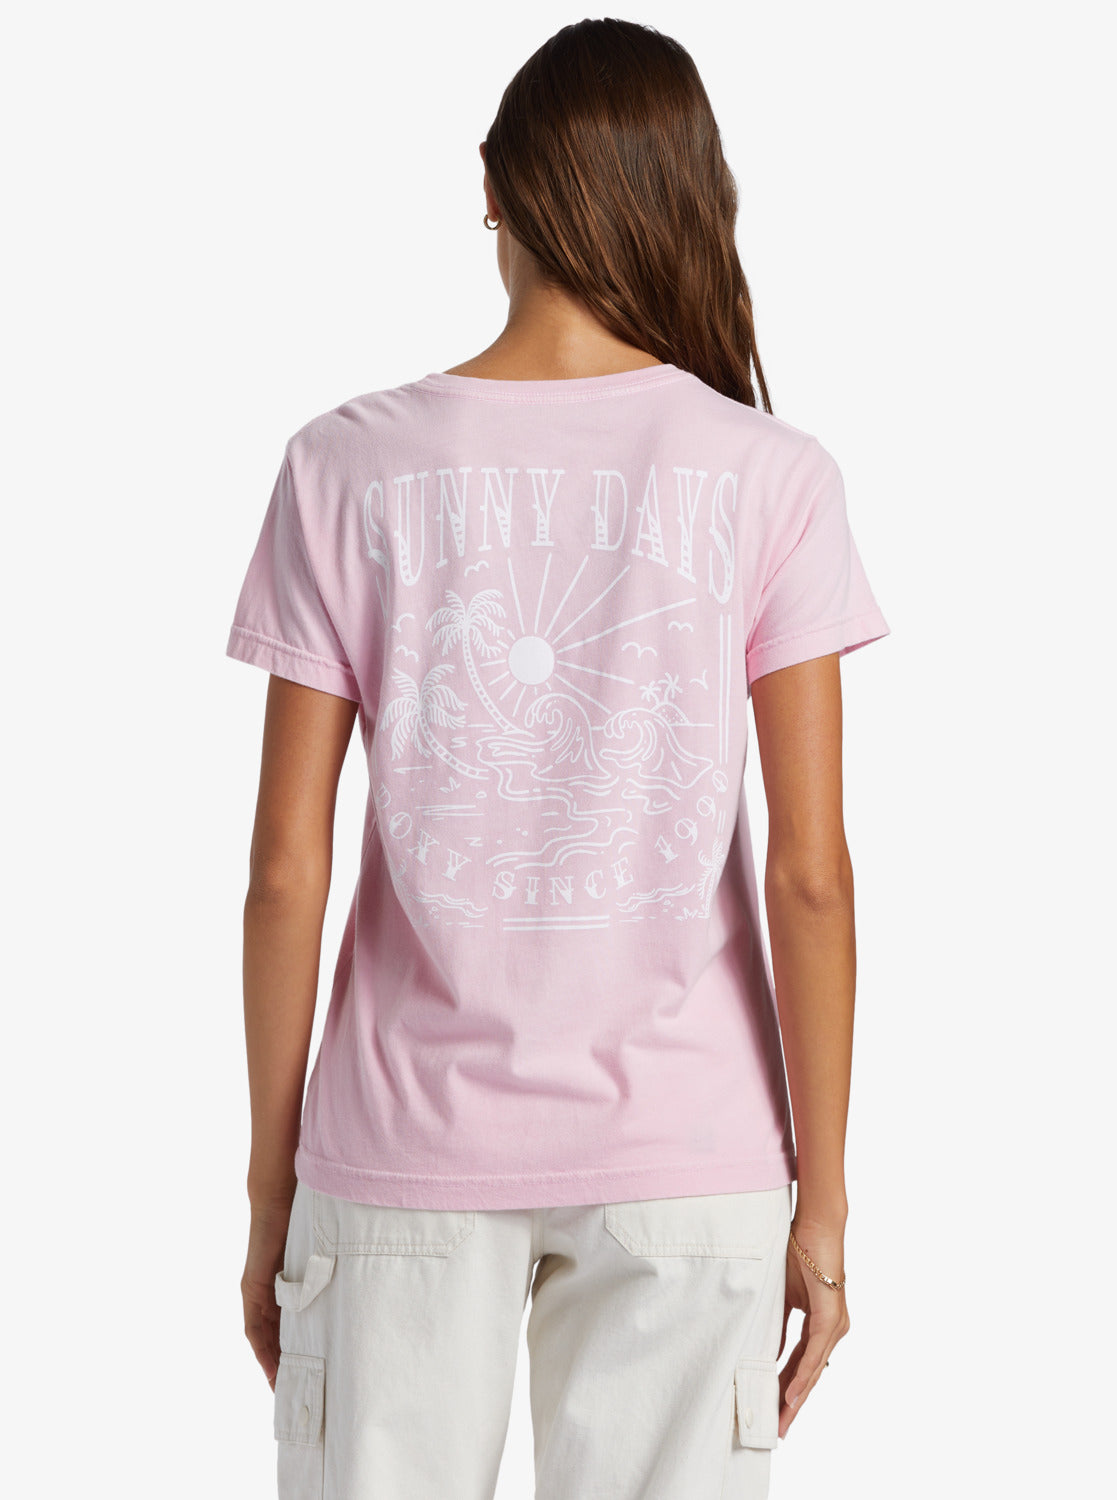 Sunny Days Boyfriend T-Shirt - Prism Pink